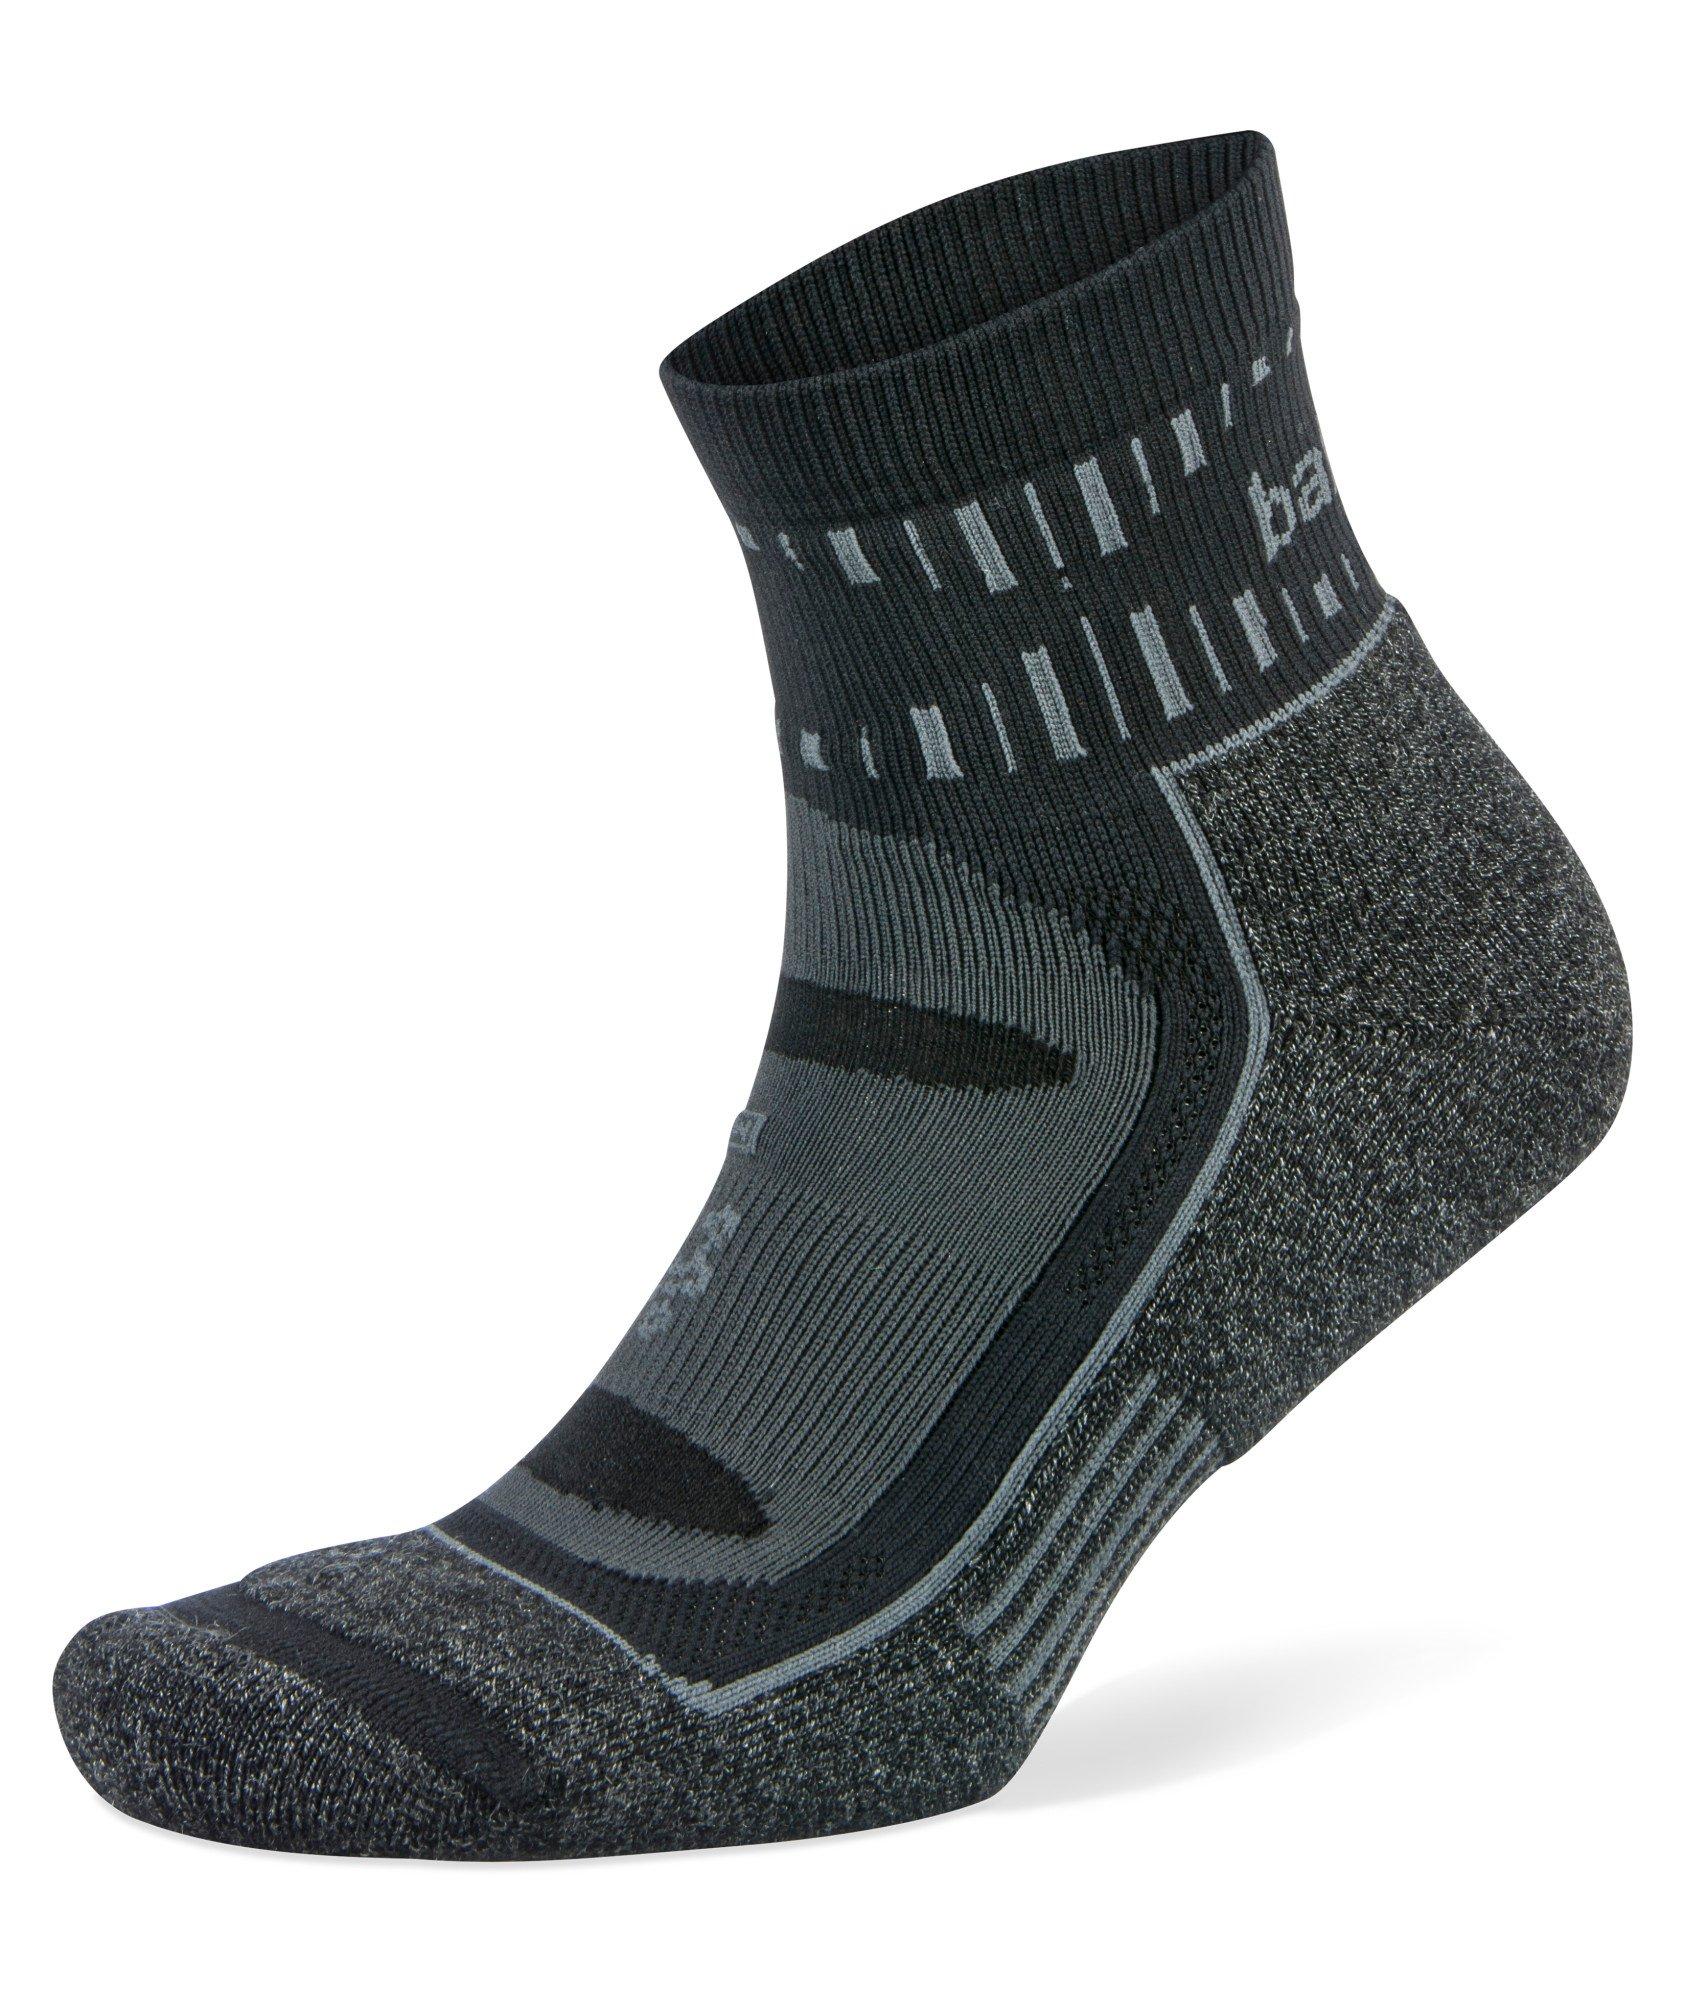 Blister Resist Mohair Quarter Socks image 0